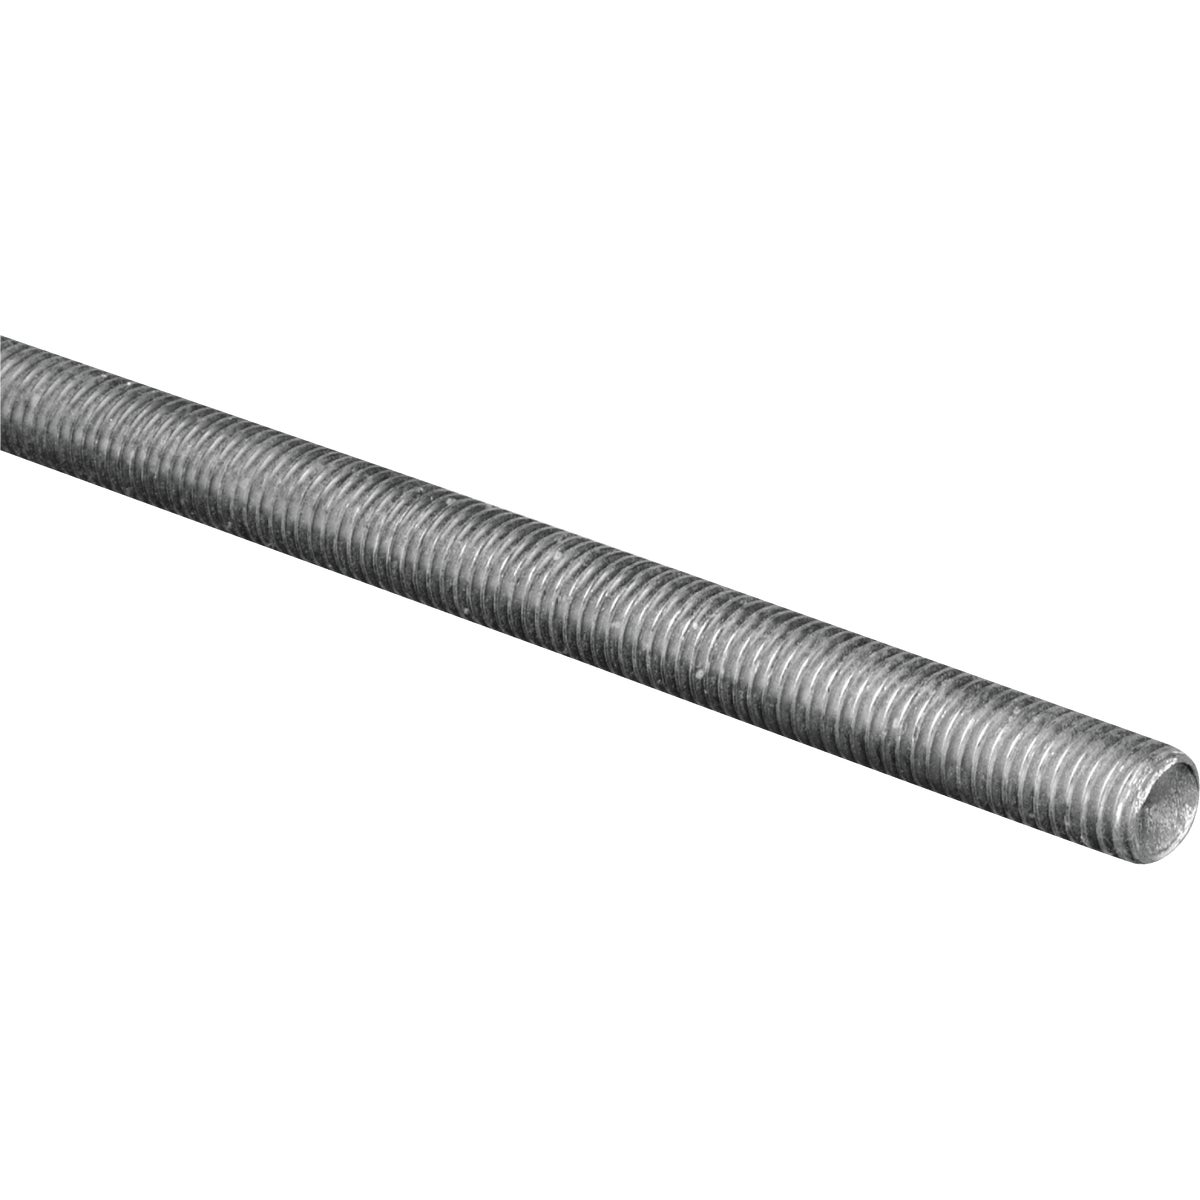 Hillman Steelworks 7/16 In. x 1 Ft. Steel Threaded Rod